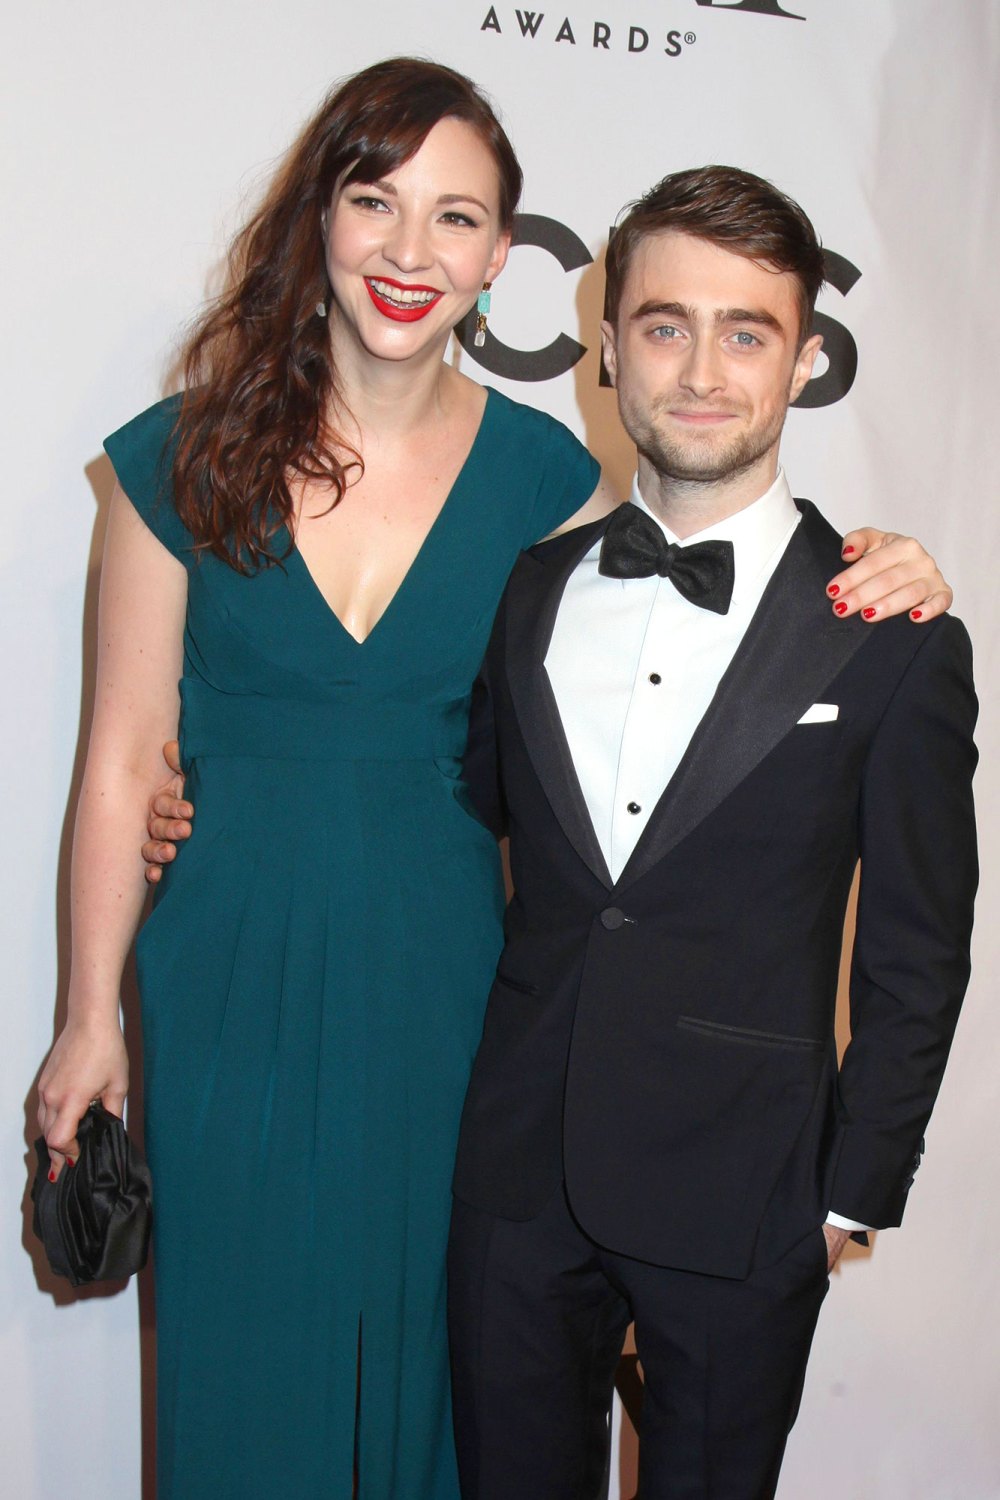 Harry Potter Star Daniel Radcliffe and Girlfriend Erin Darke Welcome 1st Child 2